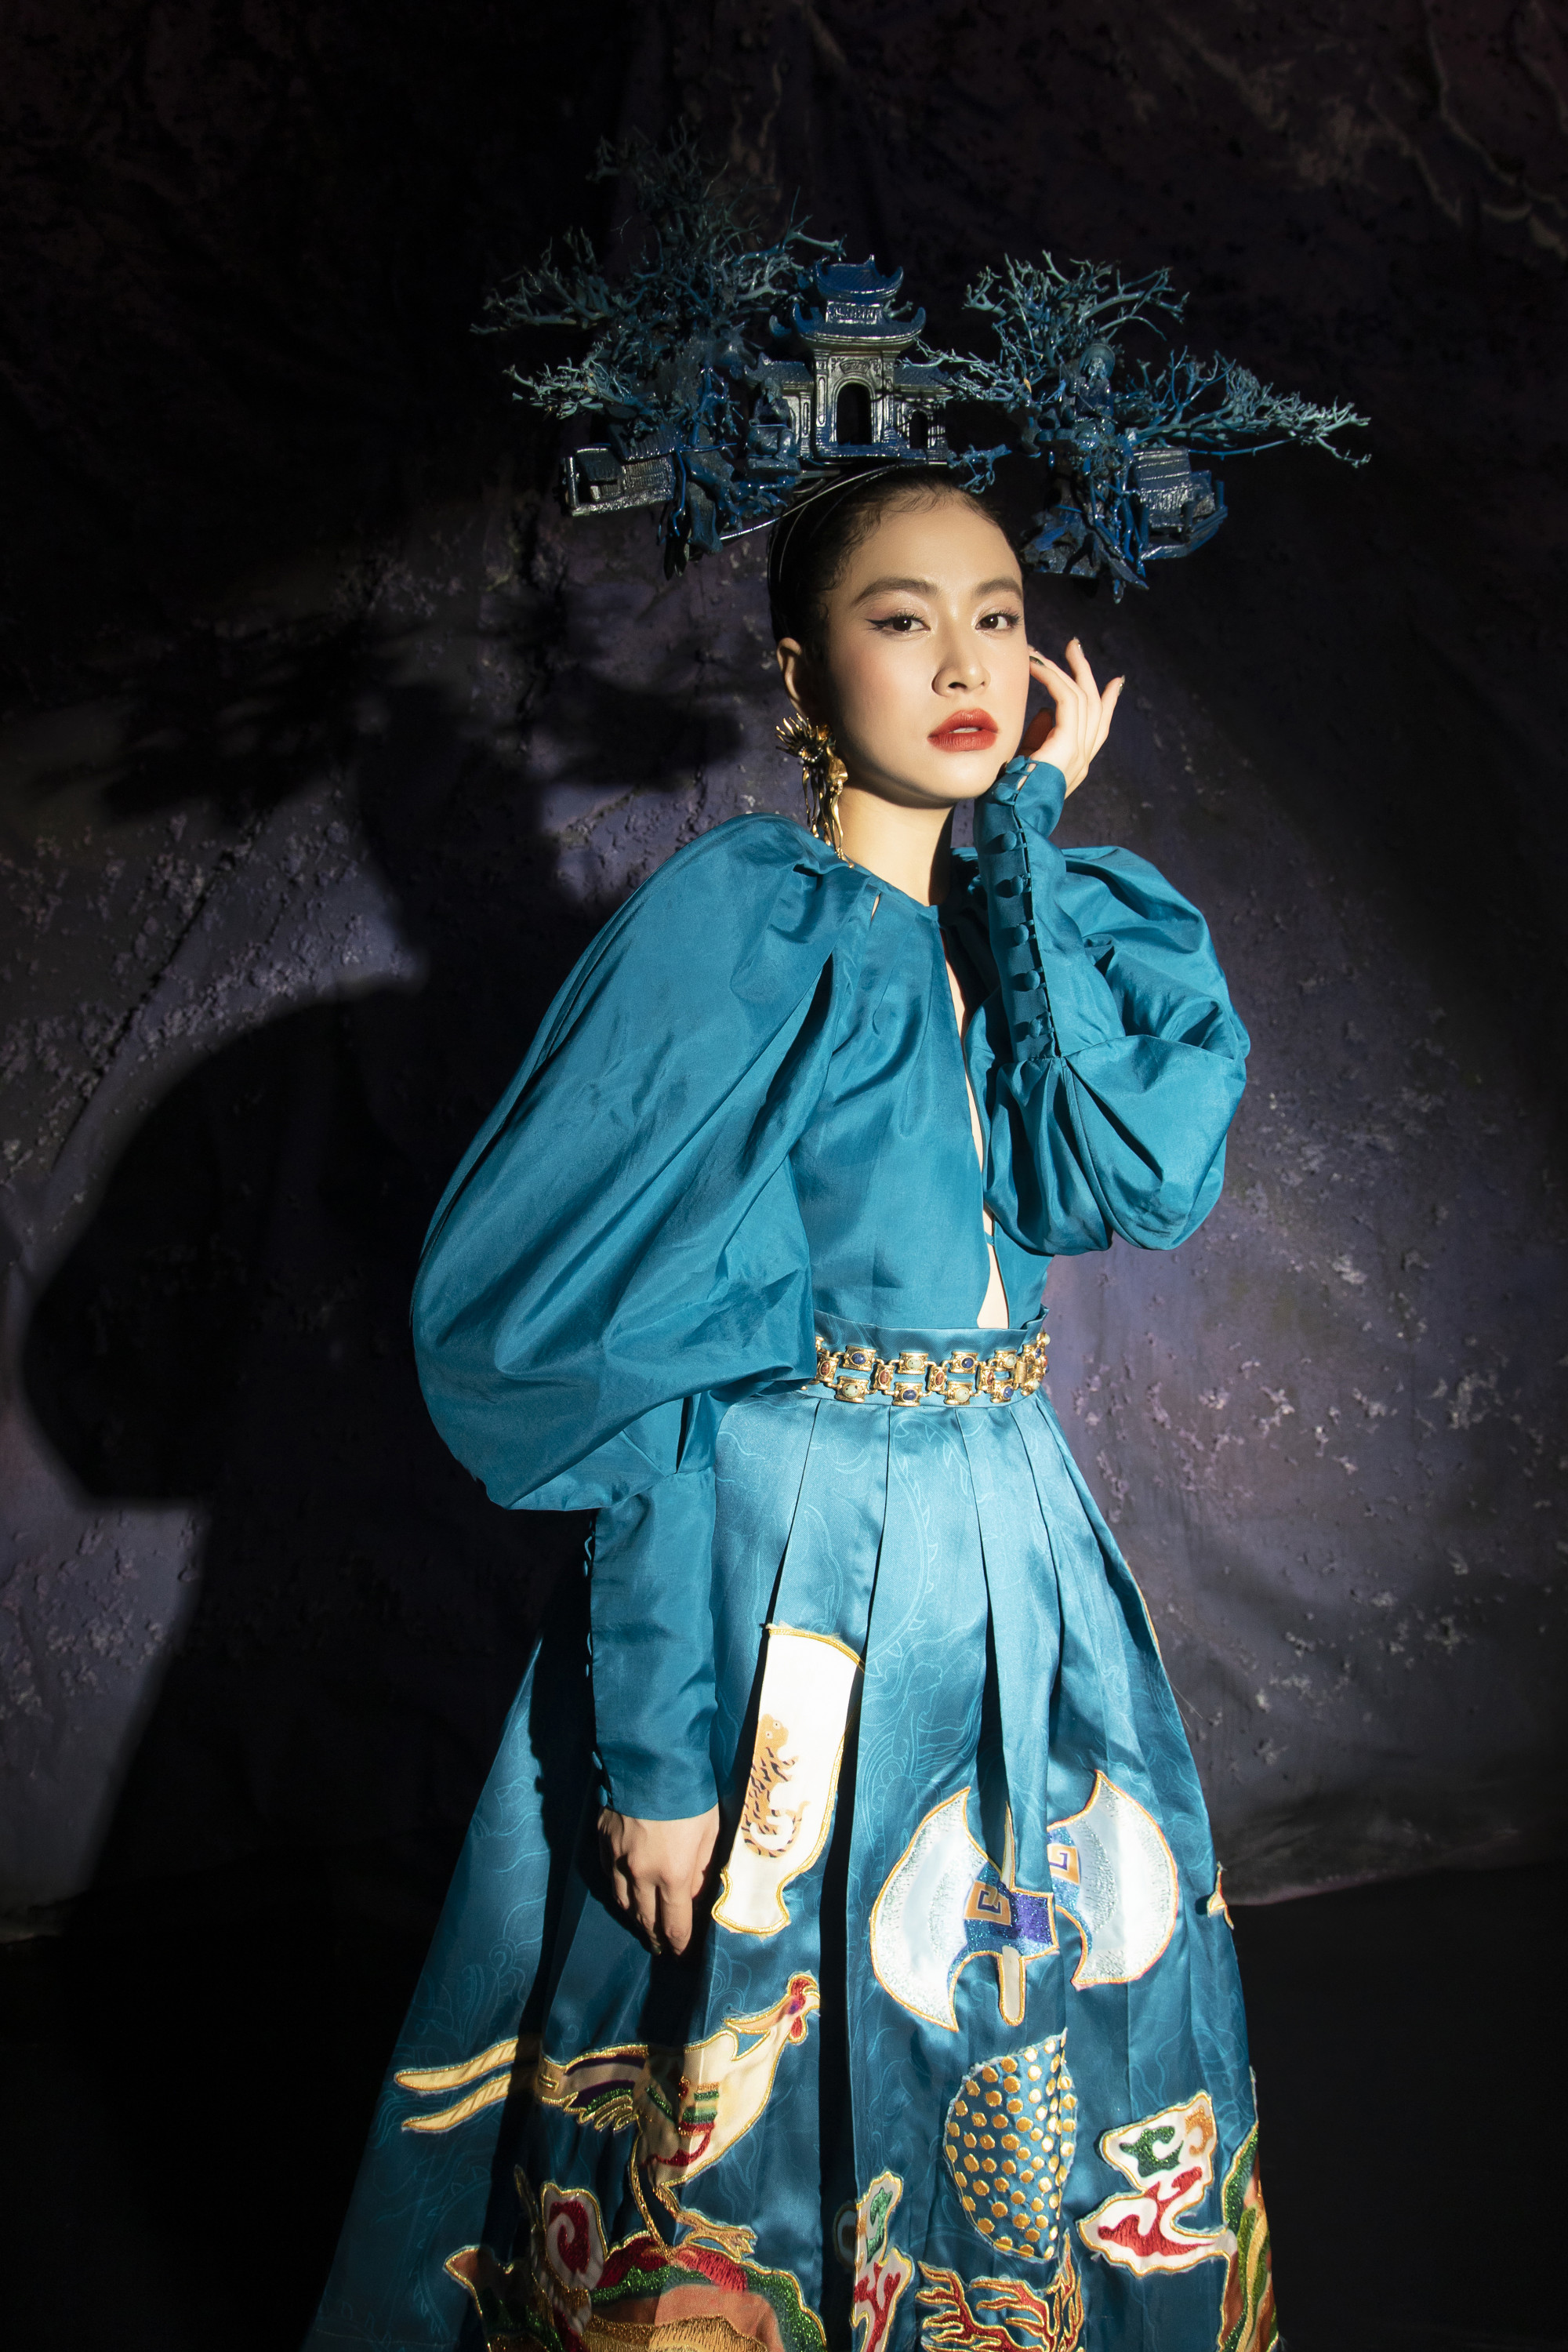 Hoàng Thùy Linh là một trong số ít nữ ca sĩ chăm chỉ, liên tục ra mắt các dự án chất lượng trong năm 2022.